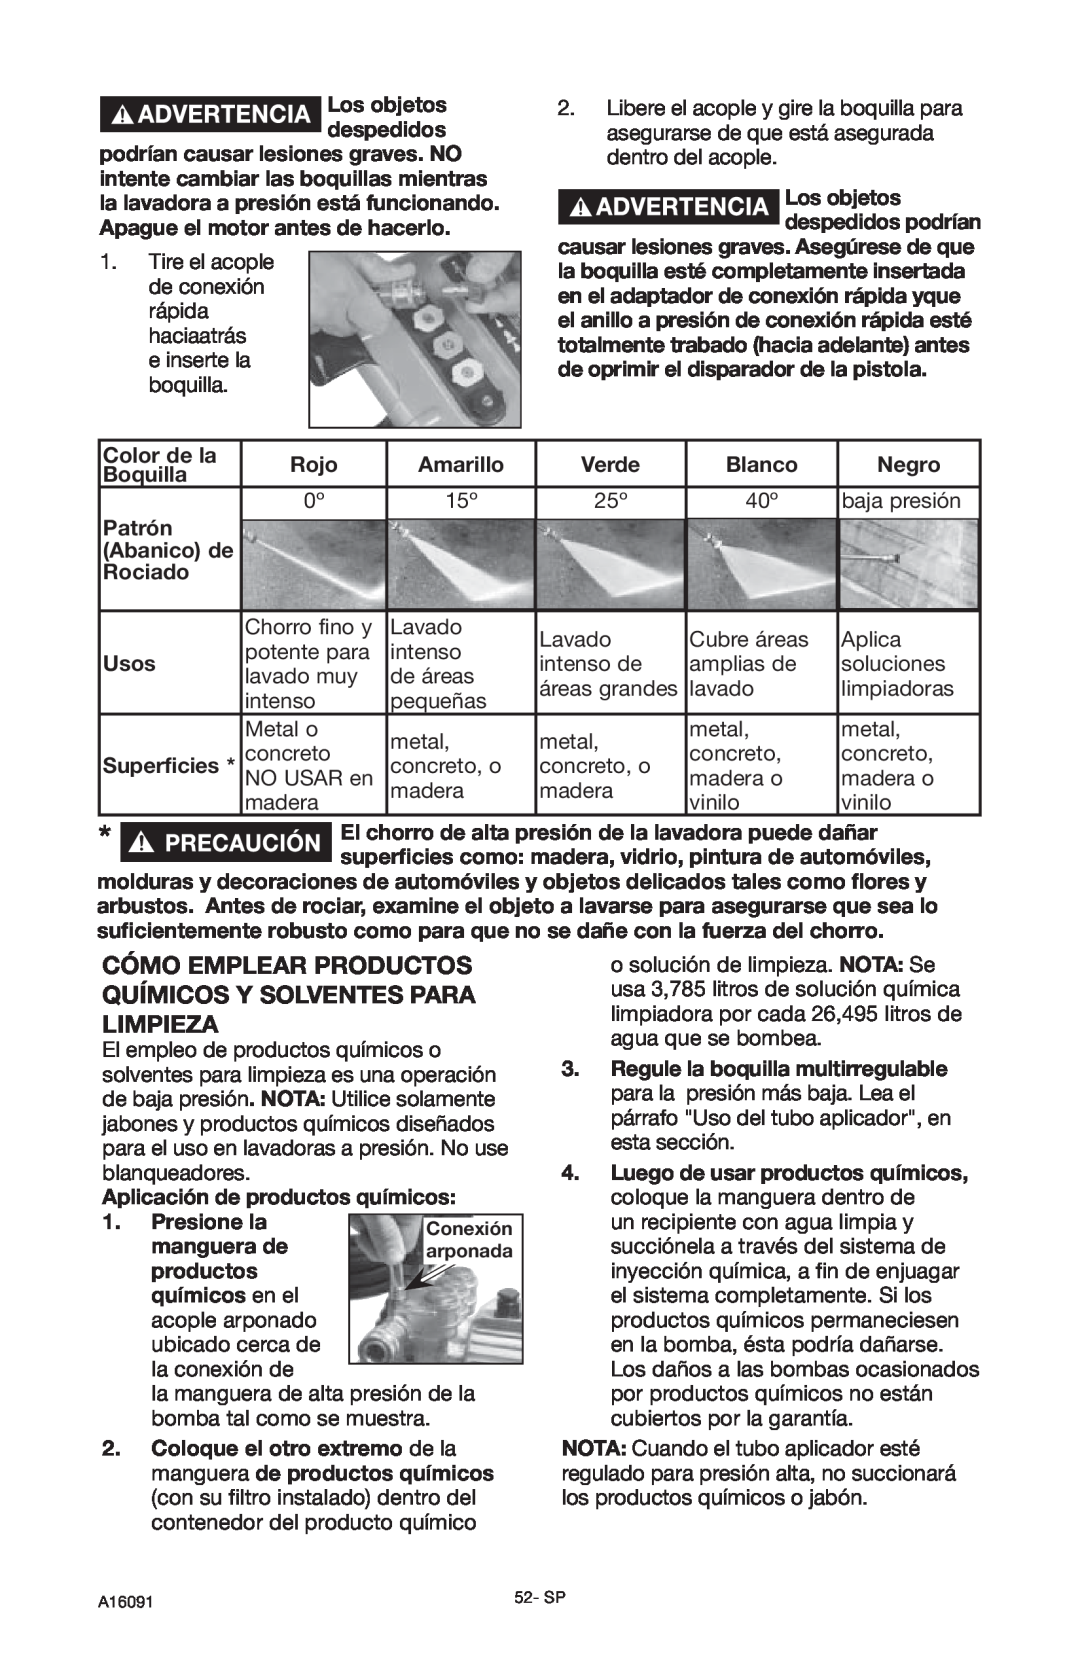 DeVillbiss Air Power Company A16091, DVH3000 operation manual Cómo Emplear Productos Químicos Y Solventes Para Limpieza 